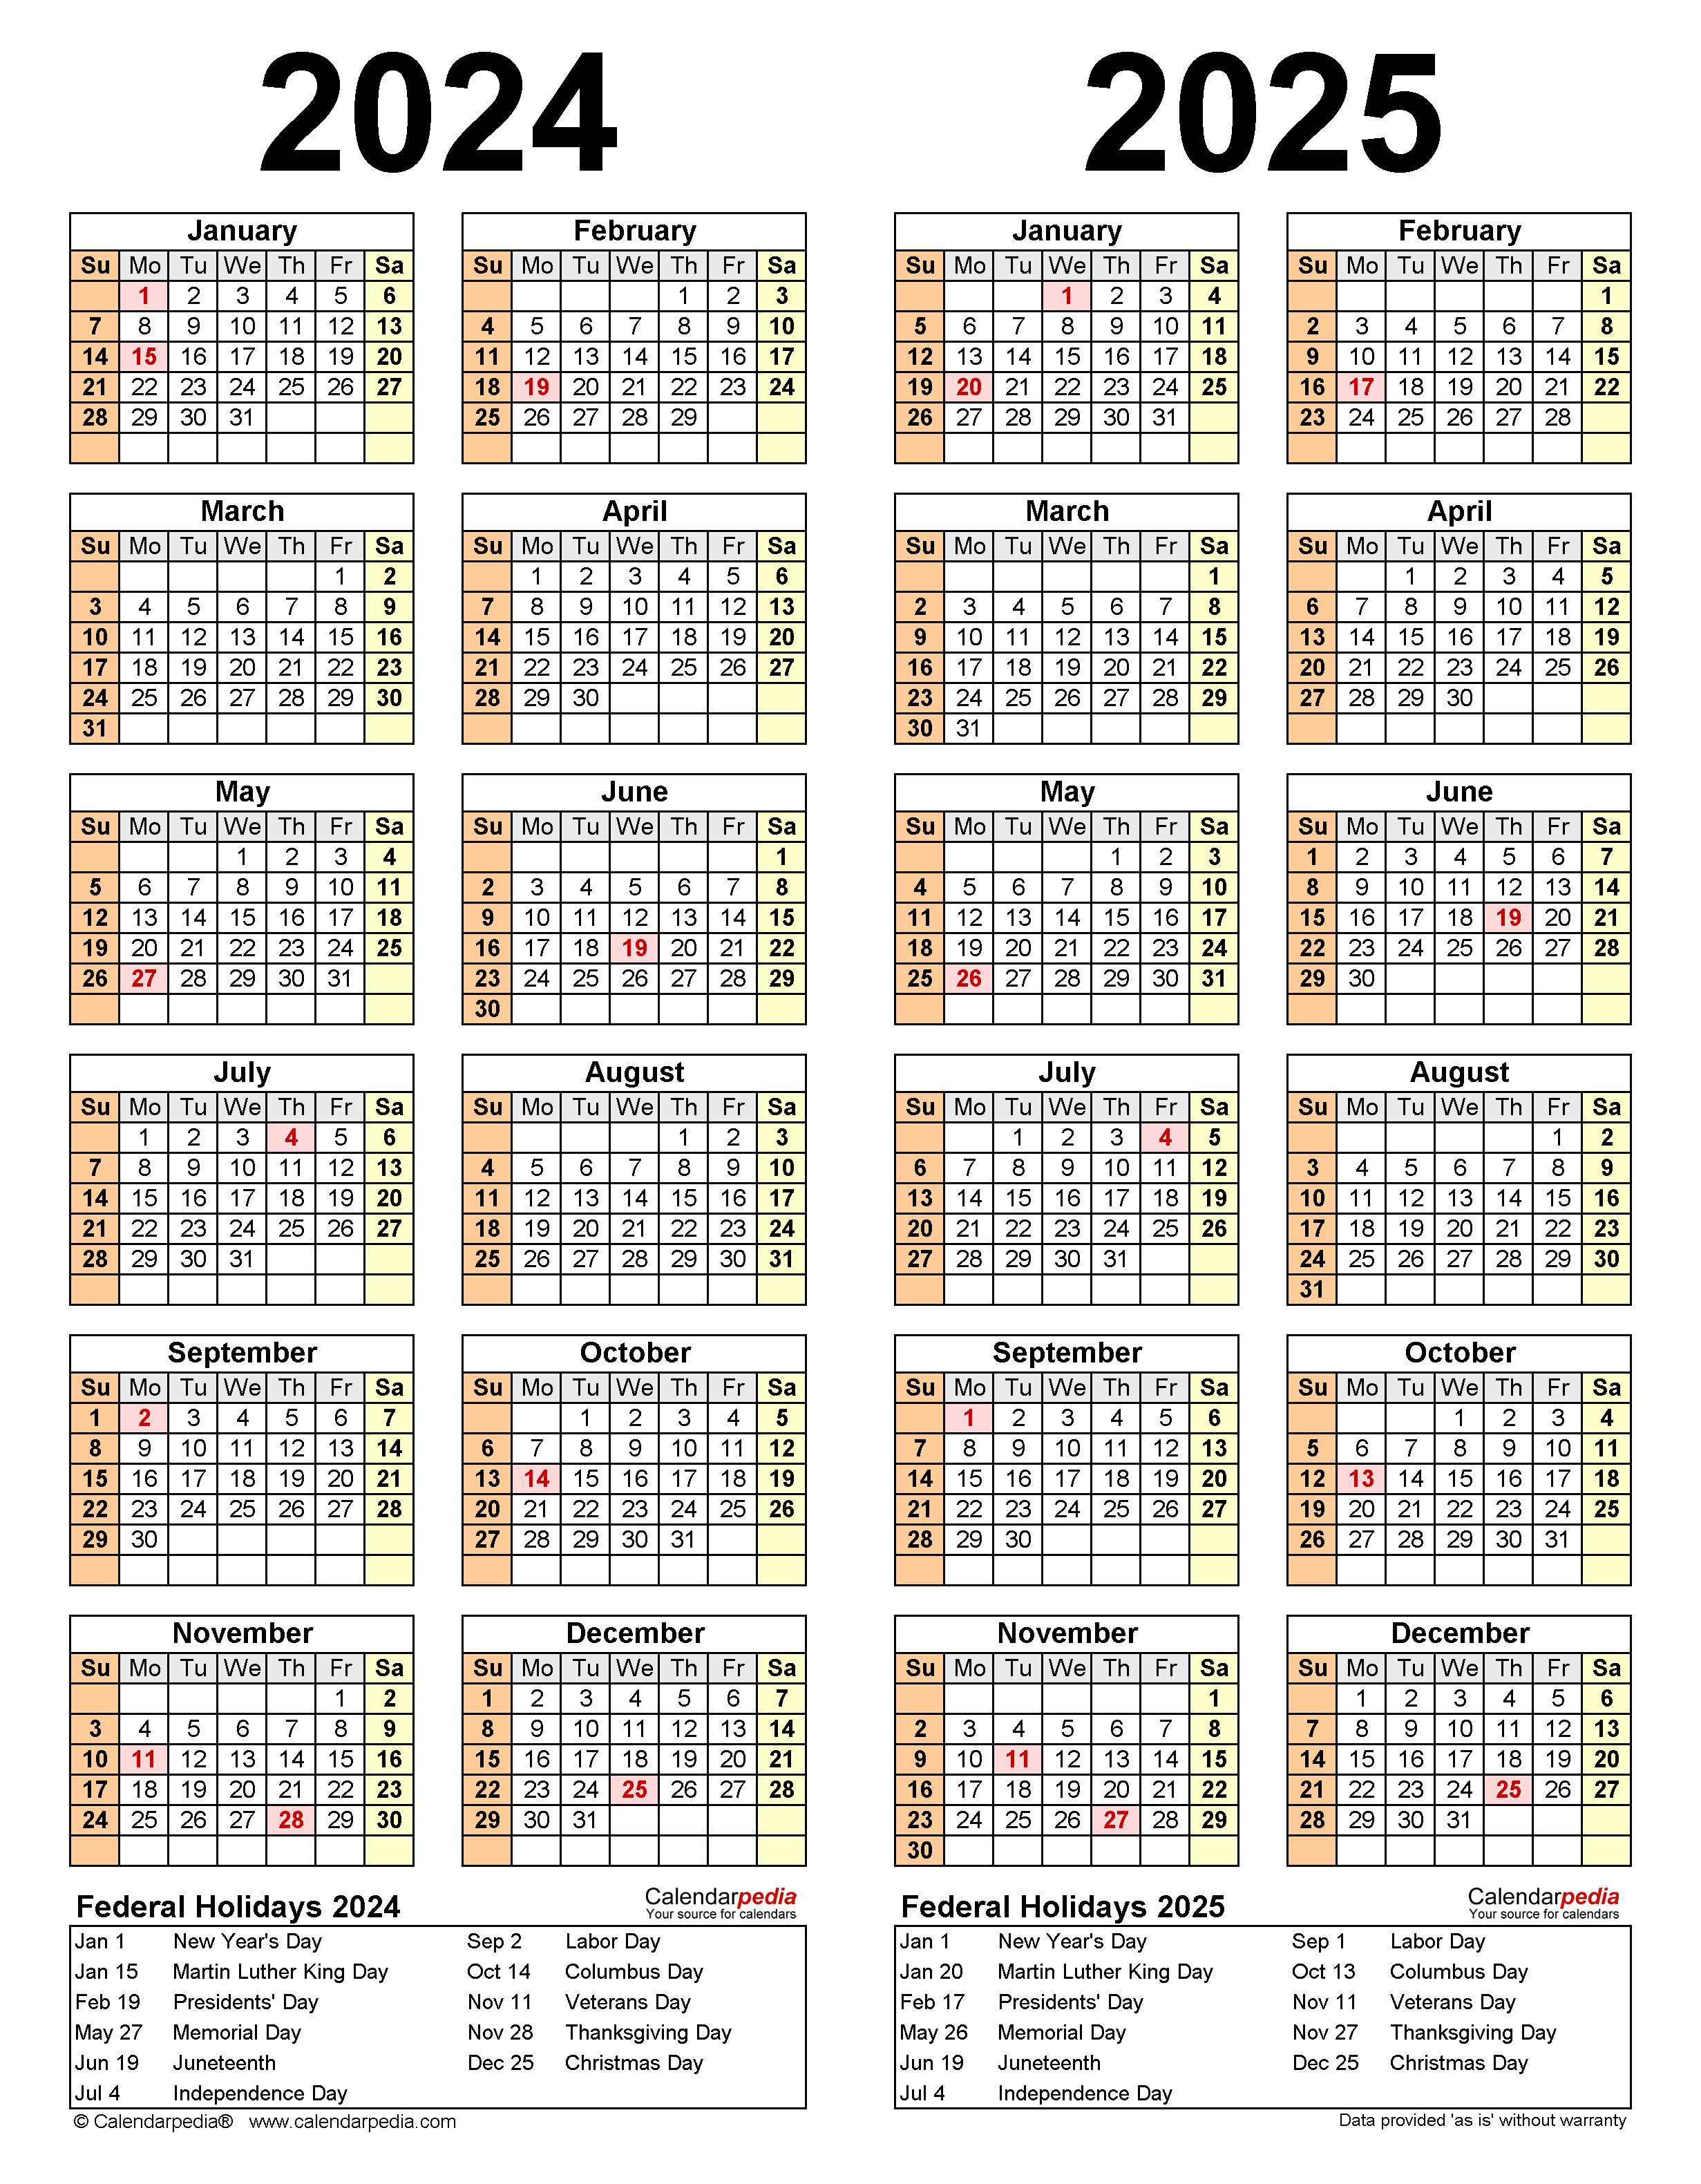 lisd-calendar-2024-2025-cassey-linell